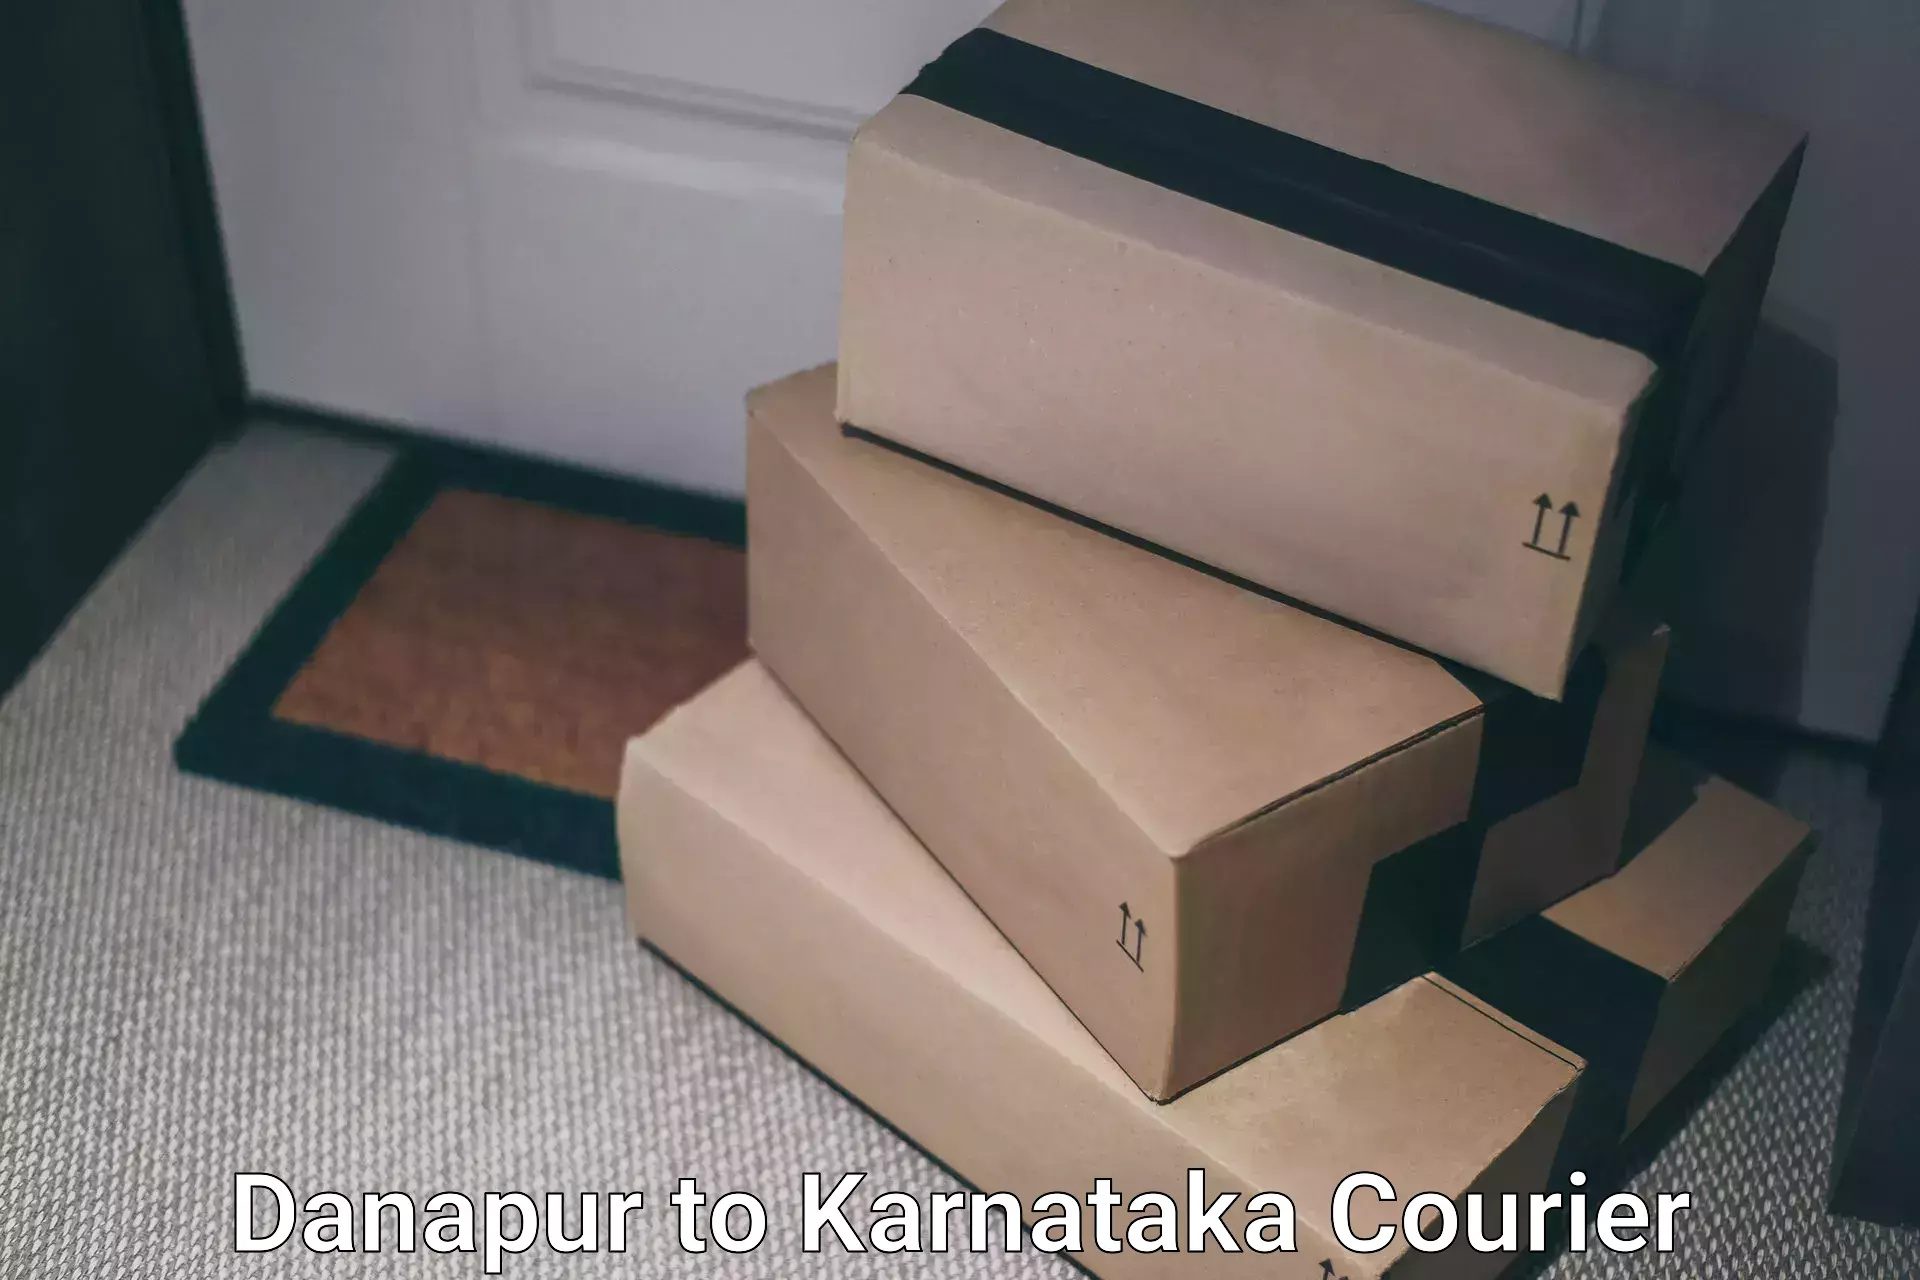 International courier rates Danapur to Mangalore University Mangalagangotri